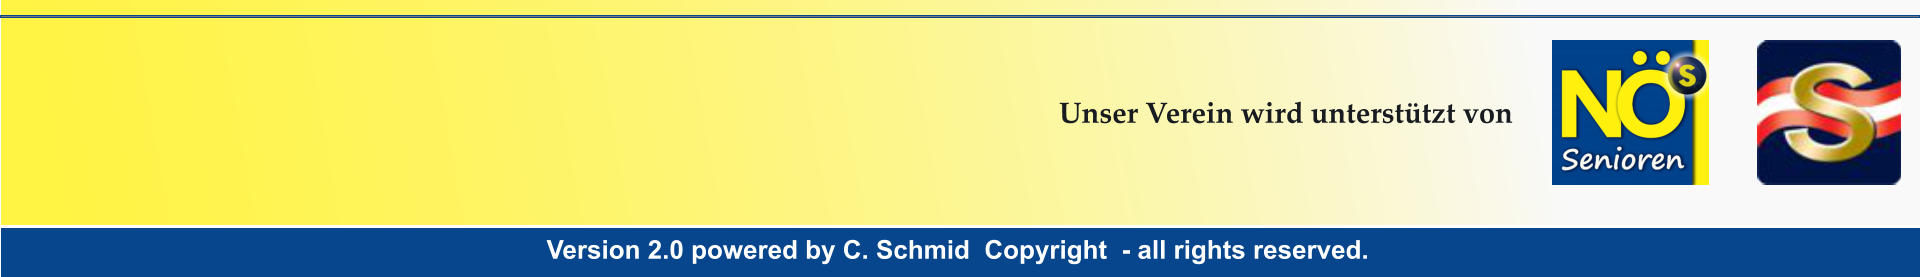 Version 2.0 powered by C. Schmid  Copyright  - all rights reserved. Version 2.0 powered by C. Schmid  Copyright  - all rights reserved. Unser Verein wird unterstützt von